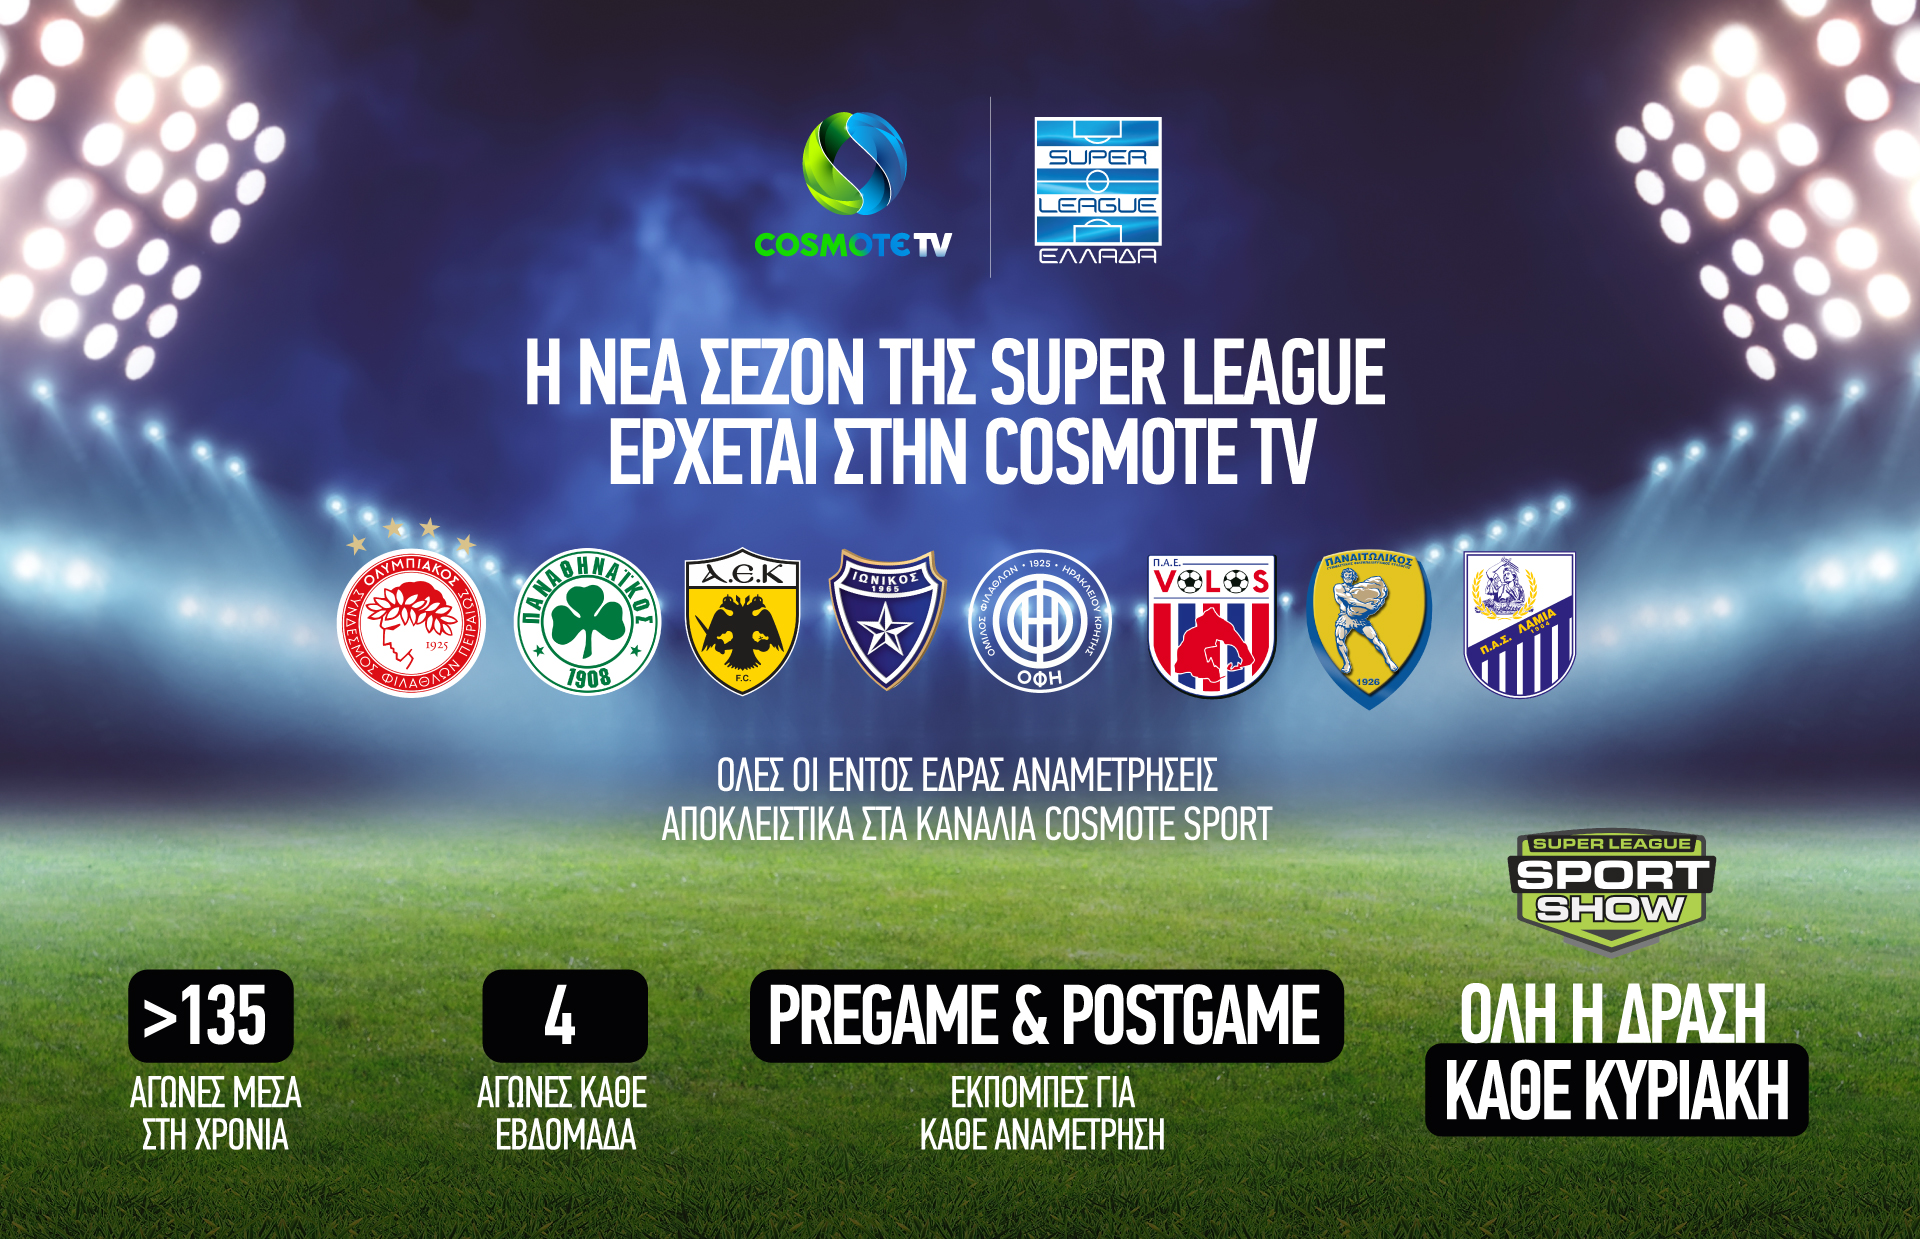 COSMOTE TV Super League New Season